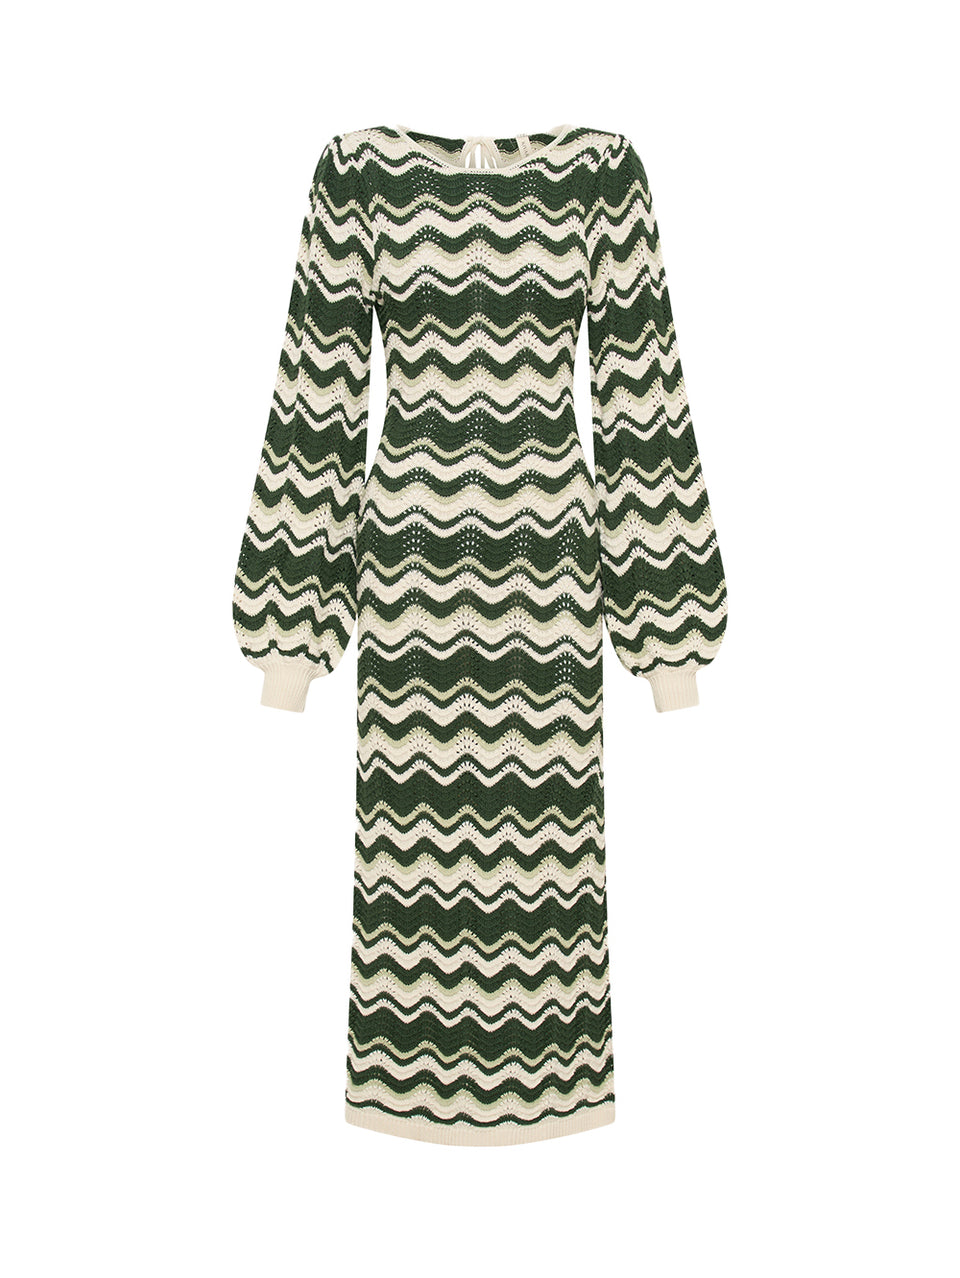 Marcella Knit Midi Dress KIVARI | Green and cream knit midi dress